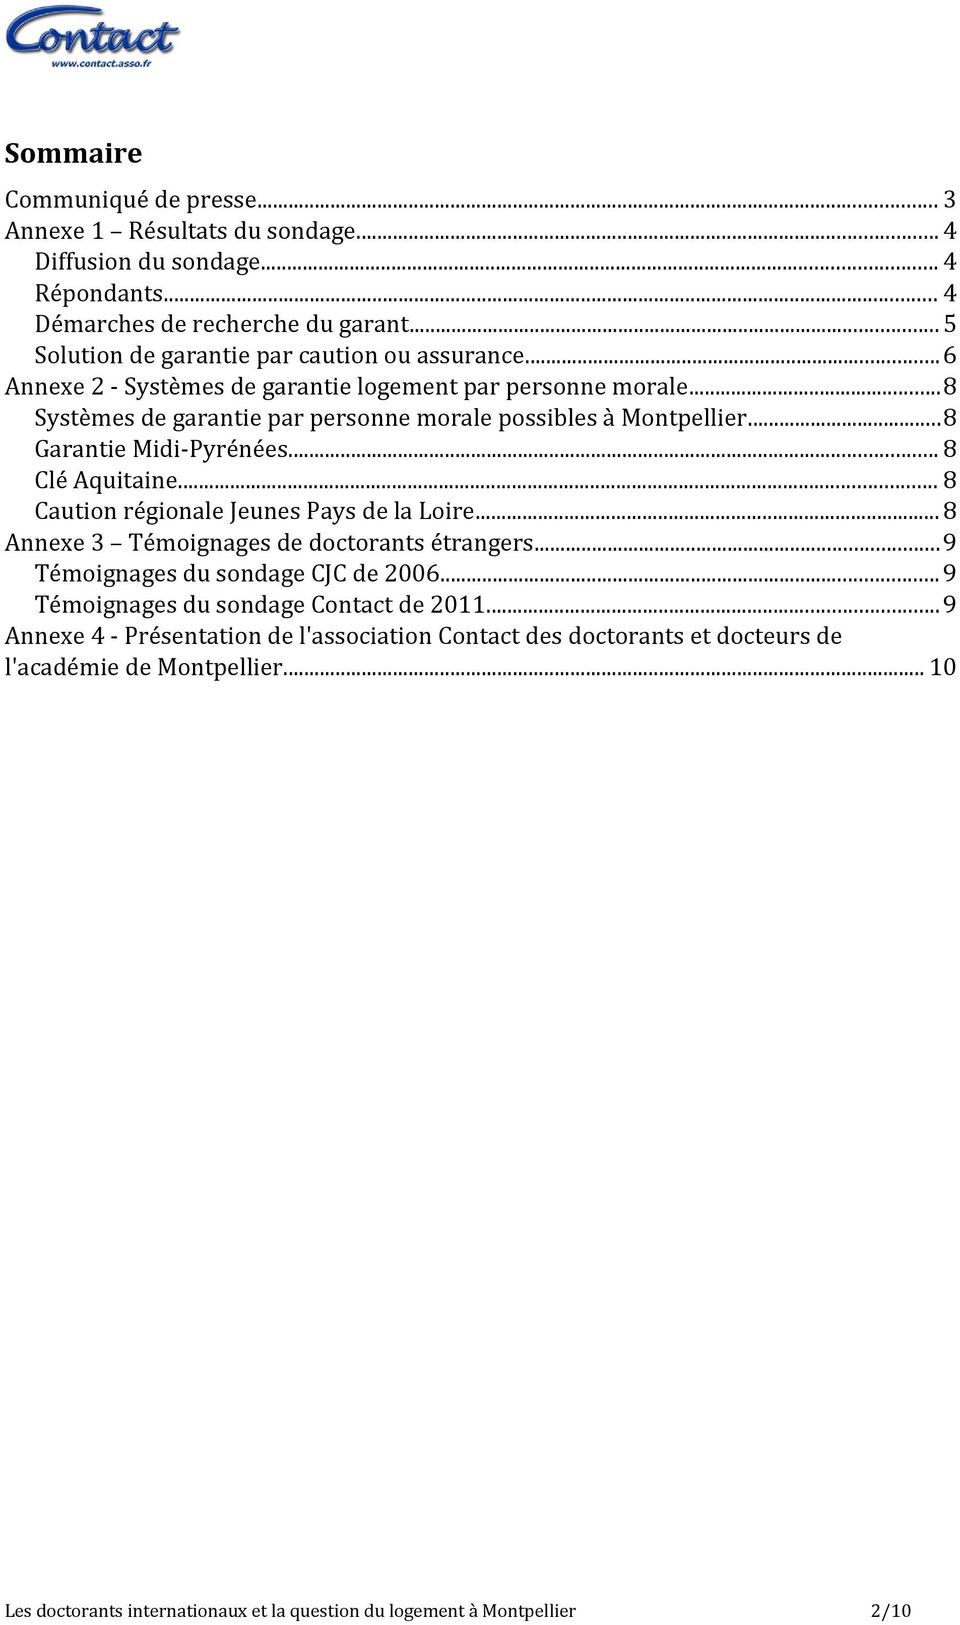 ..8 Garantie Midi-Pyrénées... 8 Clé Aquitaine... 8 Caution régionale Jeunes Pays de la Loire... 8 Annexe 3 Témoignages de doctorants étrangers...9 Témoignages du sondage CJC de 2006.